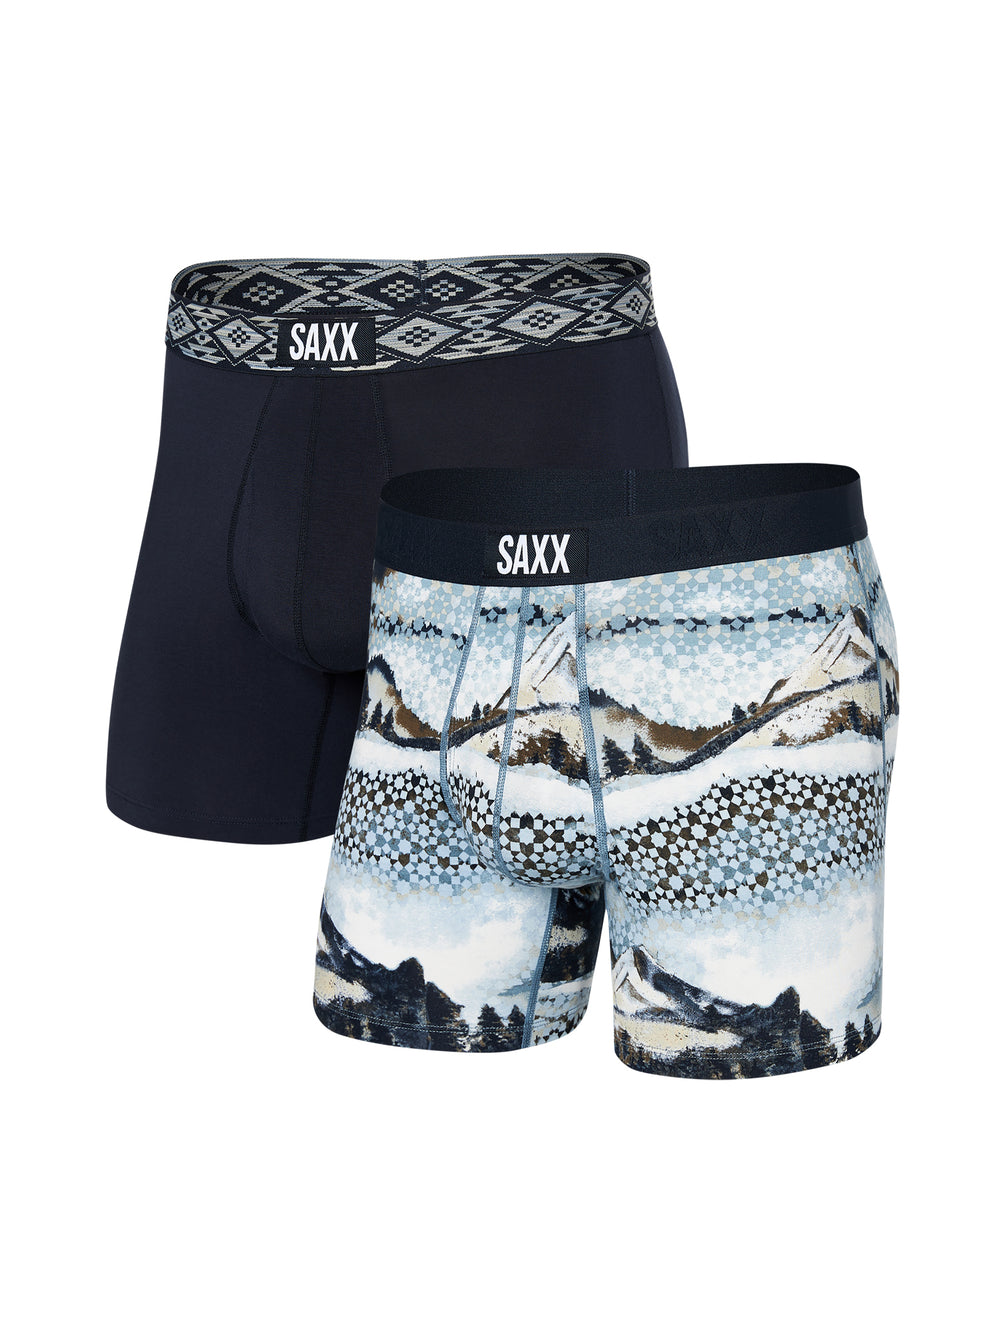 Men's Ultra Boxer Brief (2 Pack), Saxx Underwear